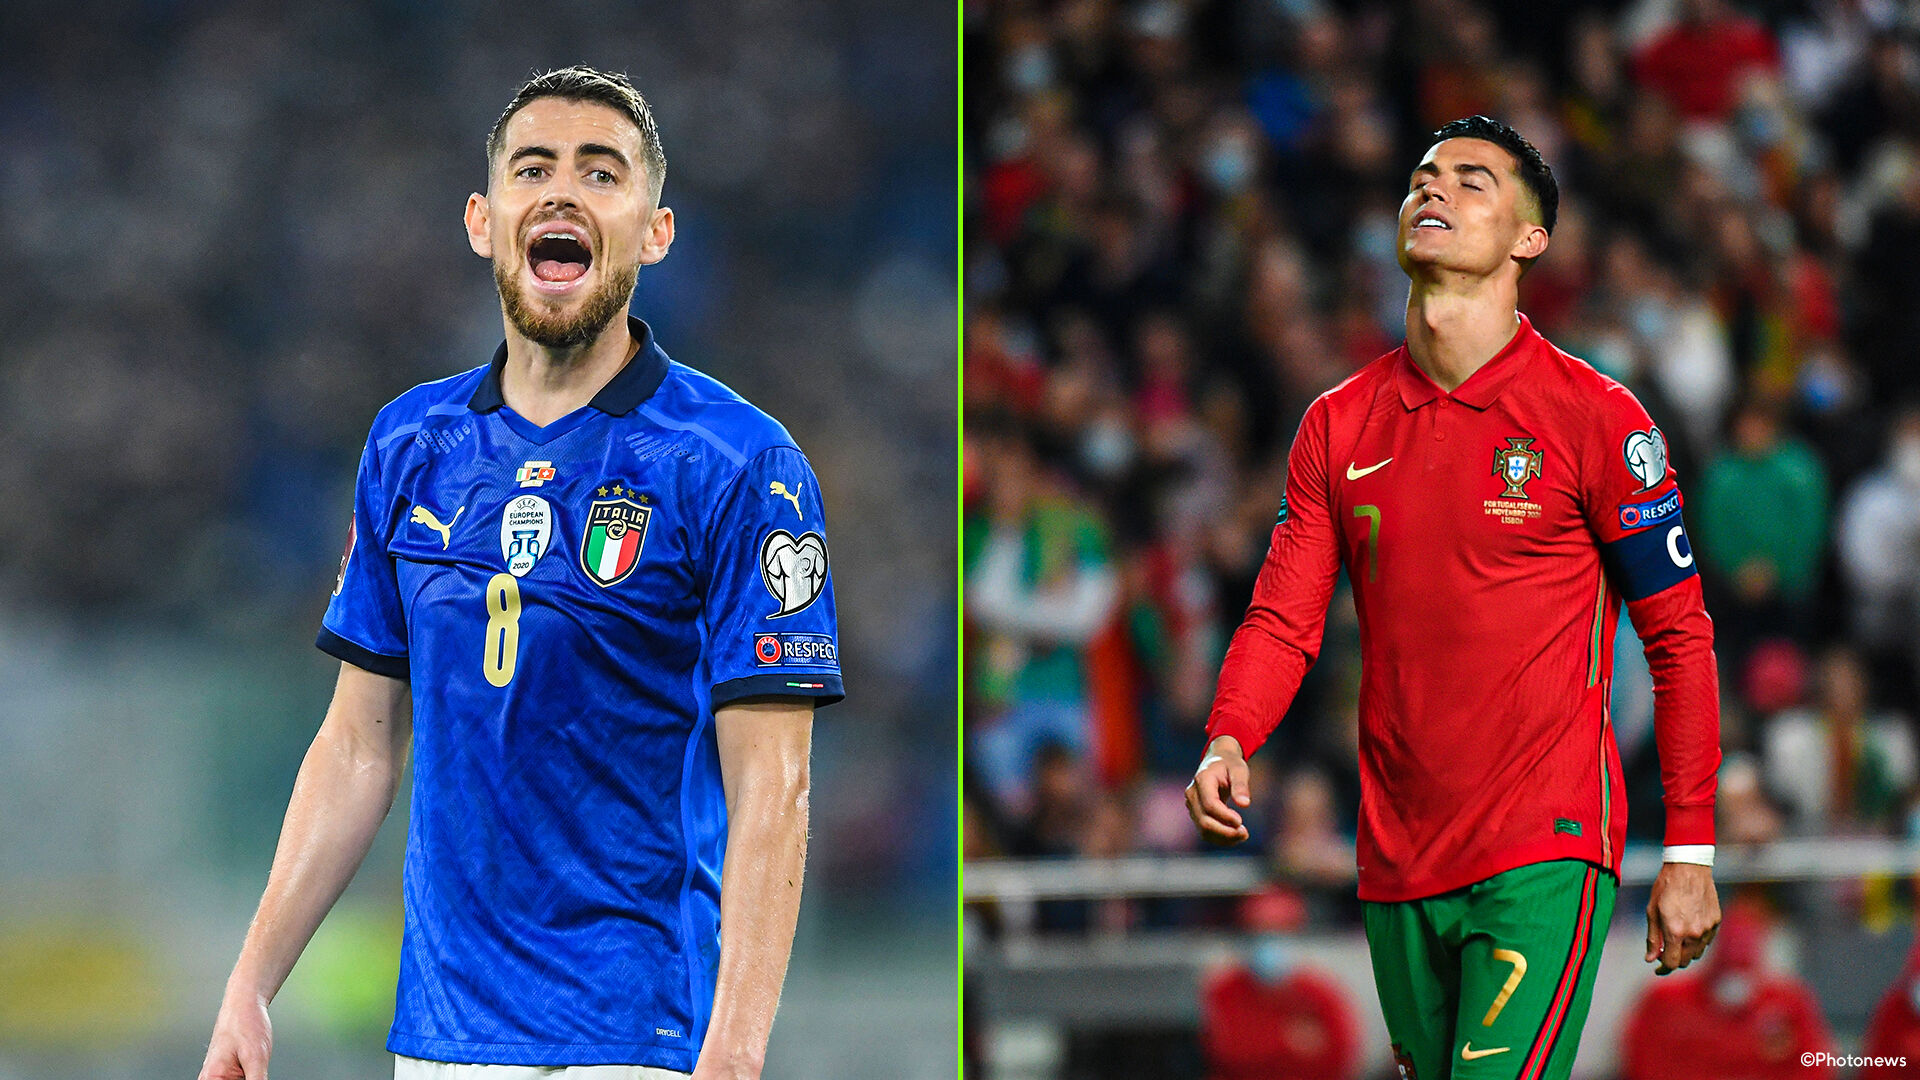 Né Italia né Portogallo ai Mondiali: Nazioni in testa sulla stessa pista negli spareggi europei |  Coppa del Mondo 2022